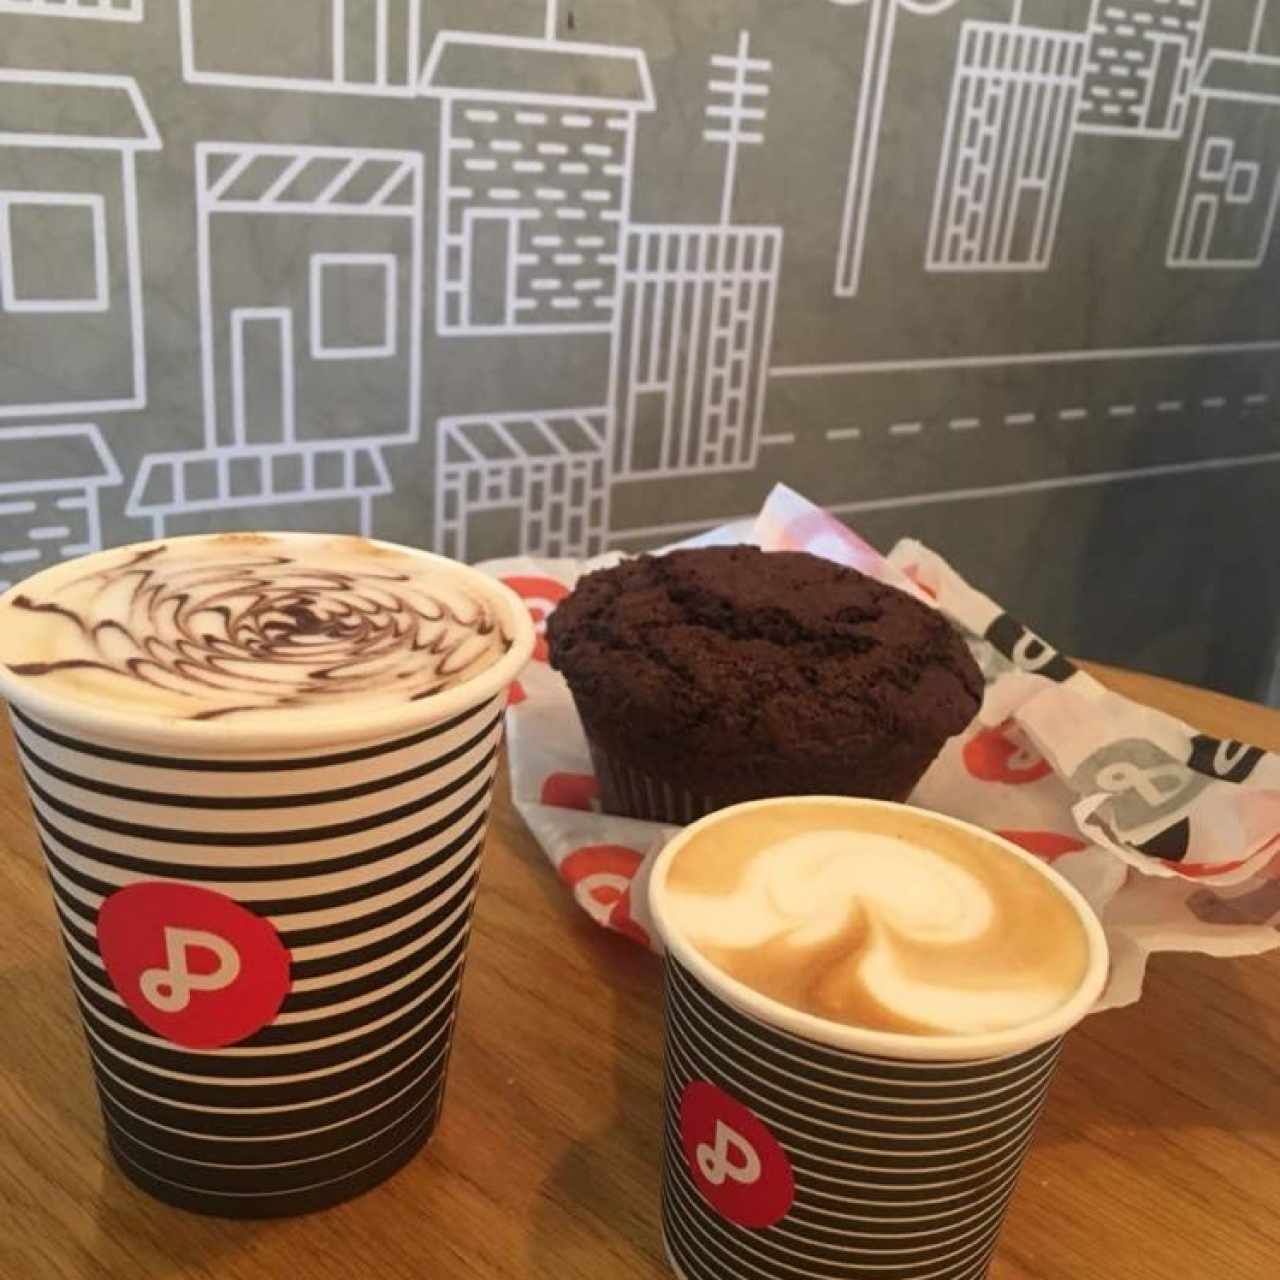 cafe de ensueño, marroncito y muffin de chocolate